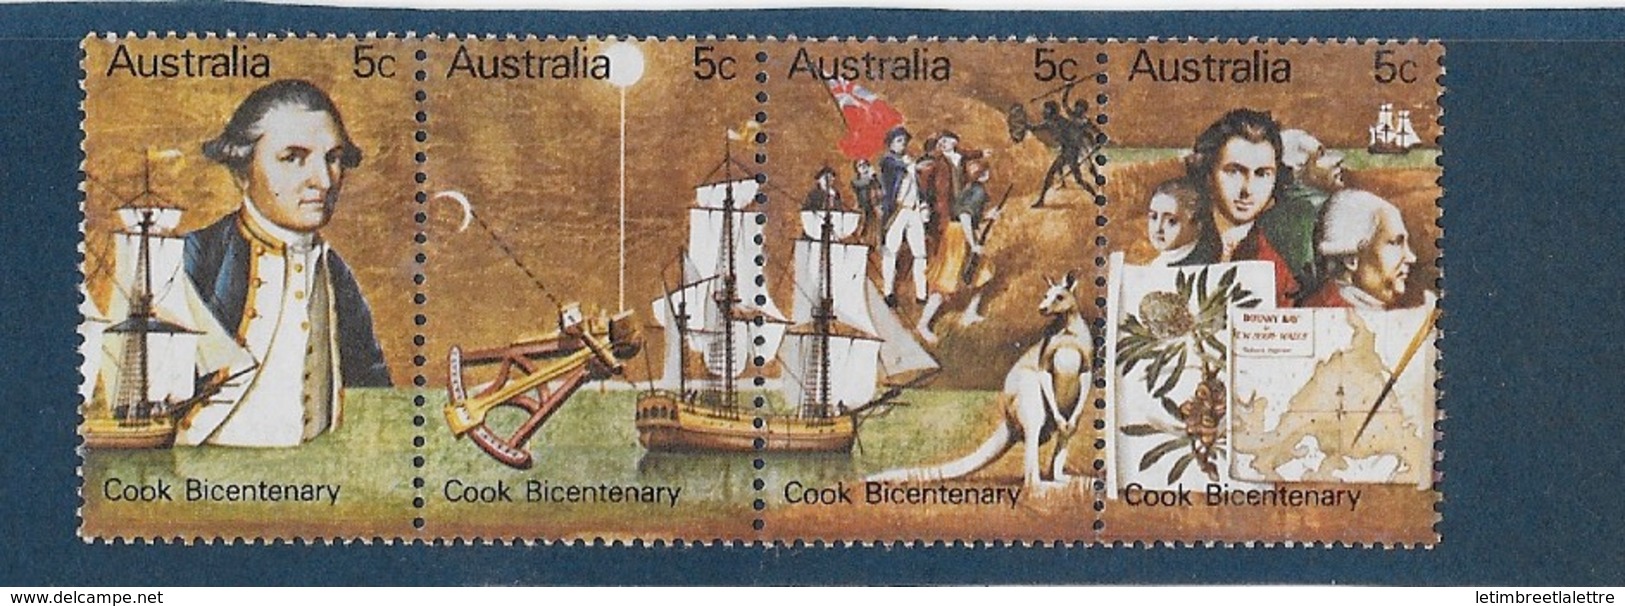 AUSTRALIE N° 407 à 412** - Mint Stamps